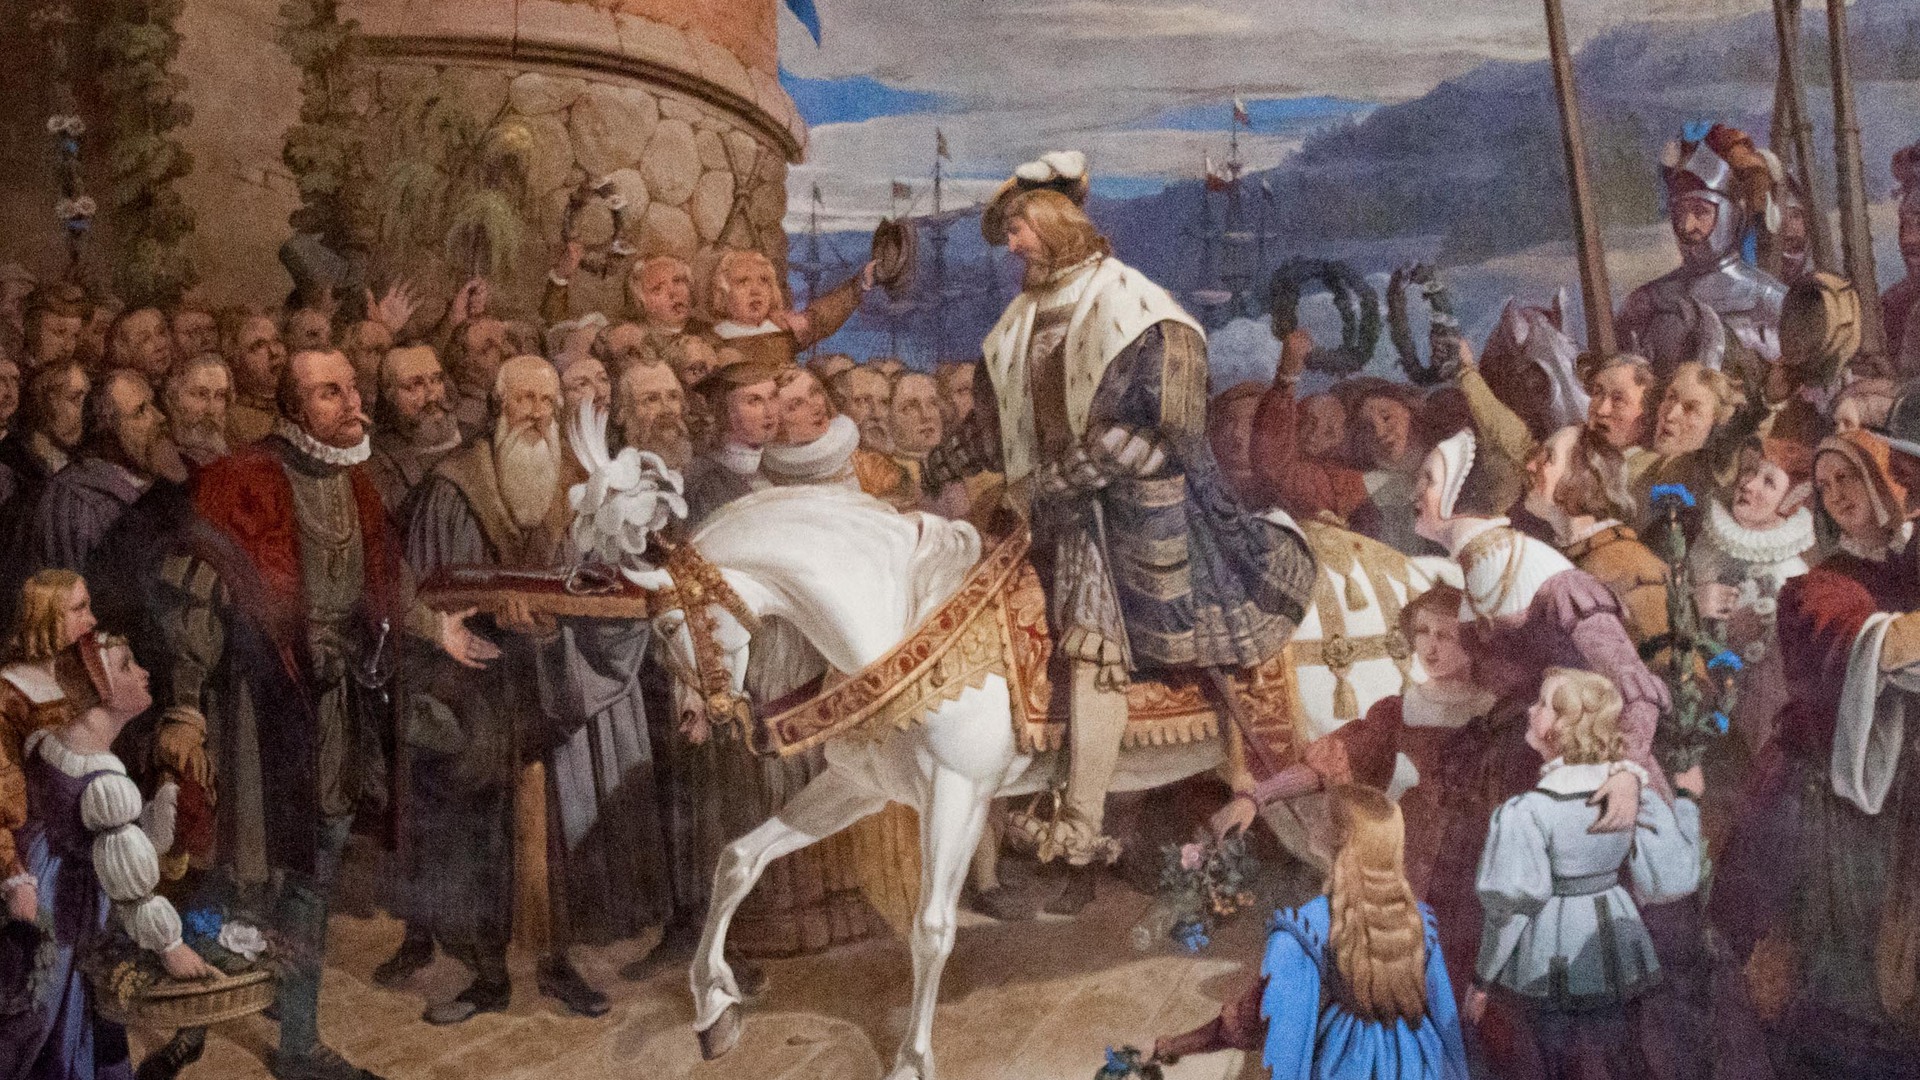 Detalj av målning, Gustav Vasa på vit häst. 